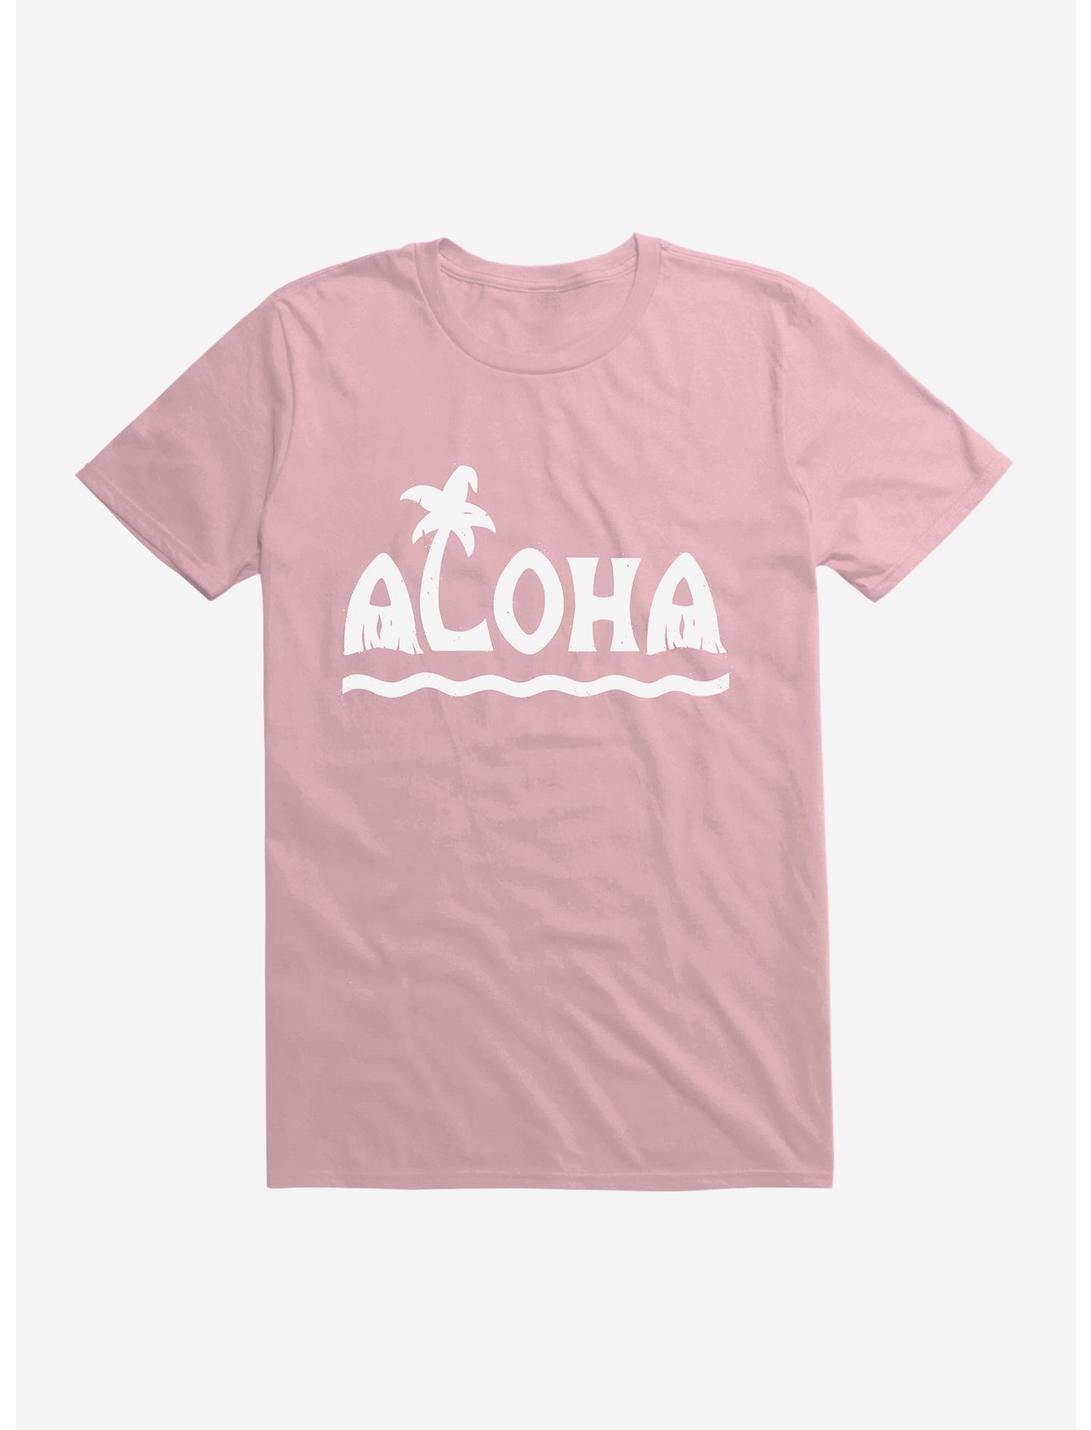 Aloha! T-Shirt, LIGHT PINK, hi-res